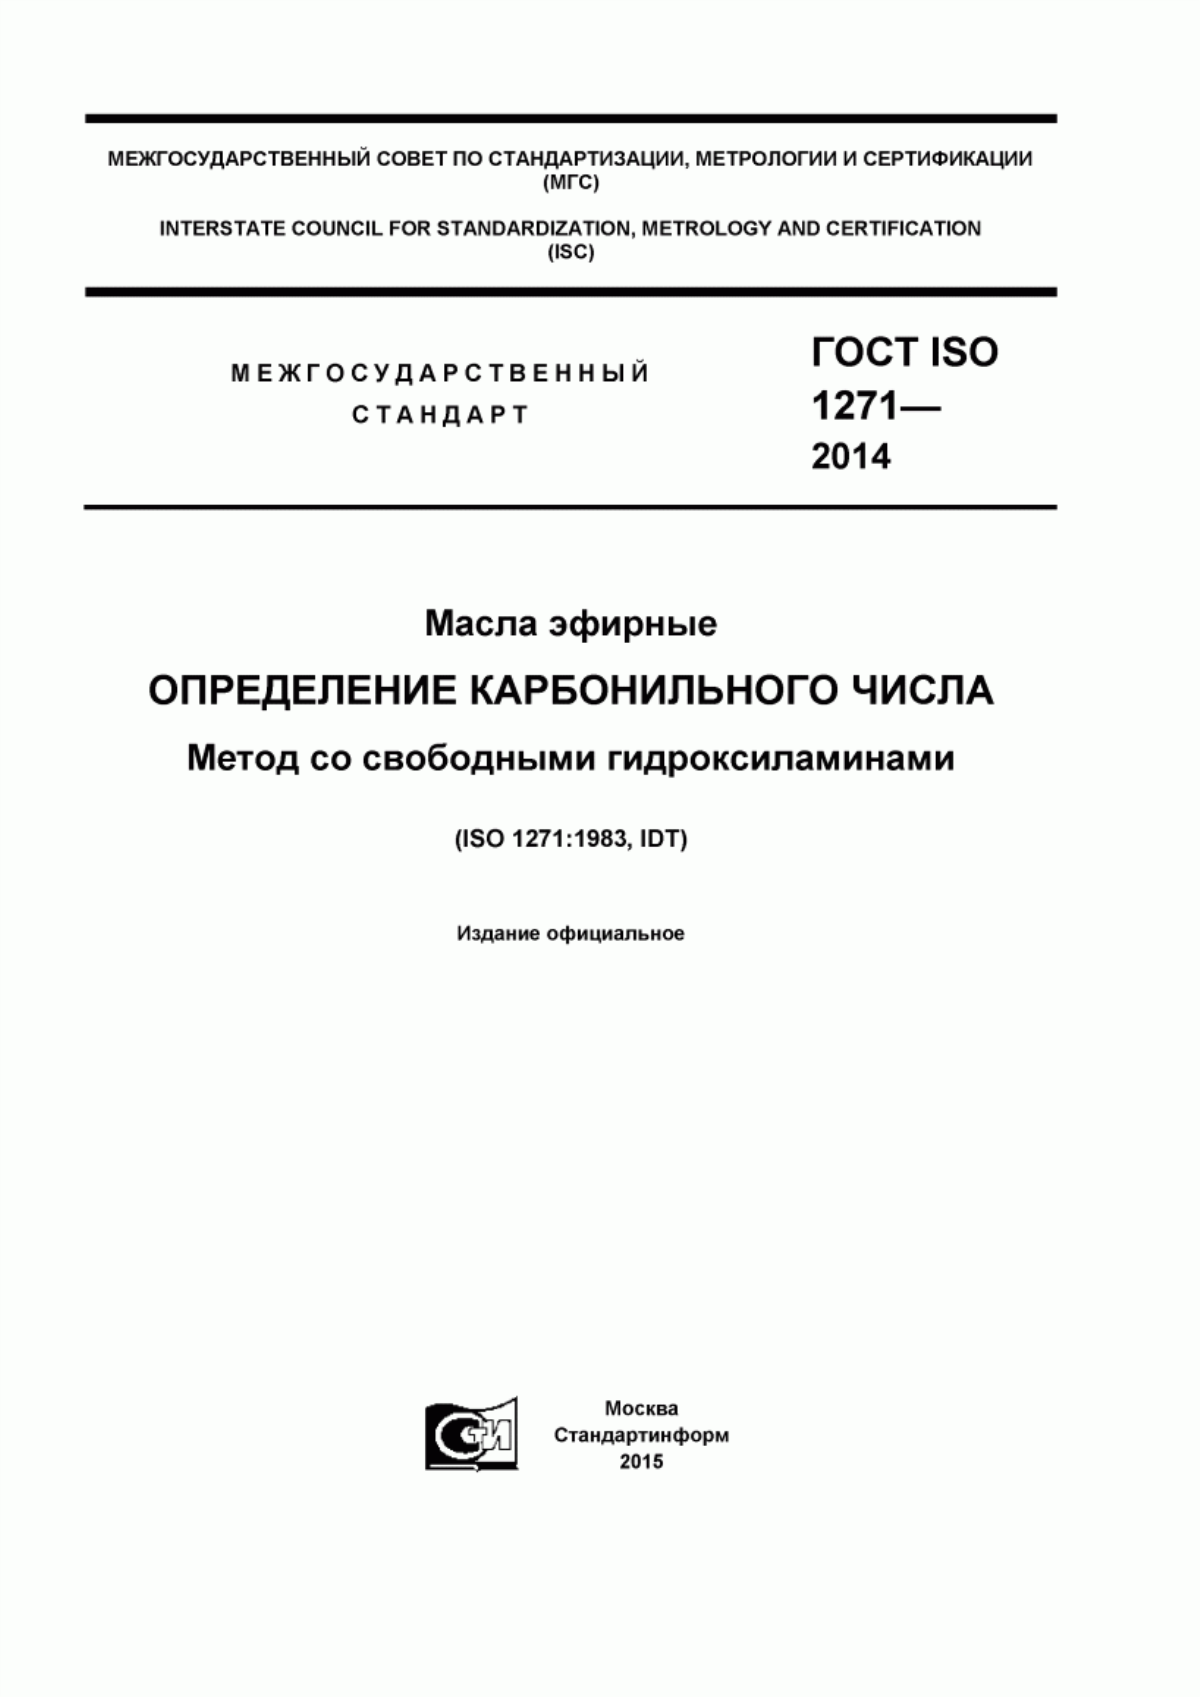 ГОСТ ISO 1271-2014 Масла эфирные. Определение карбонильного числа. Метод со свободными гидроксиламинами